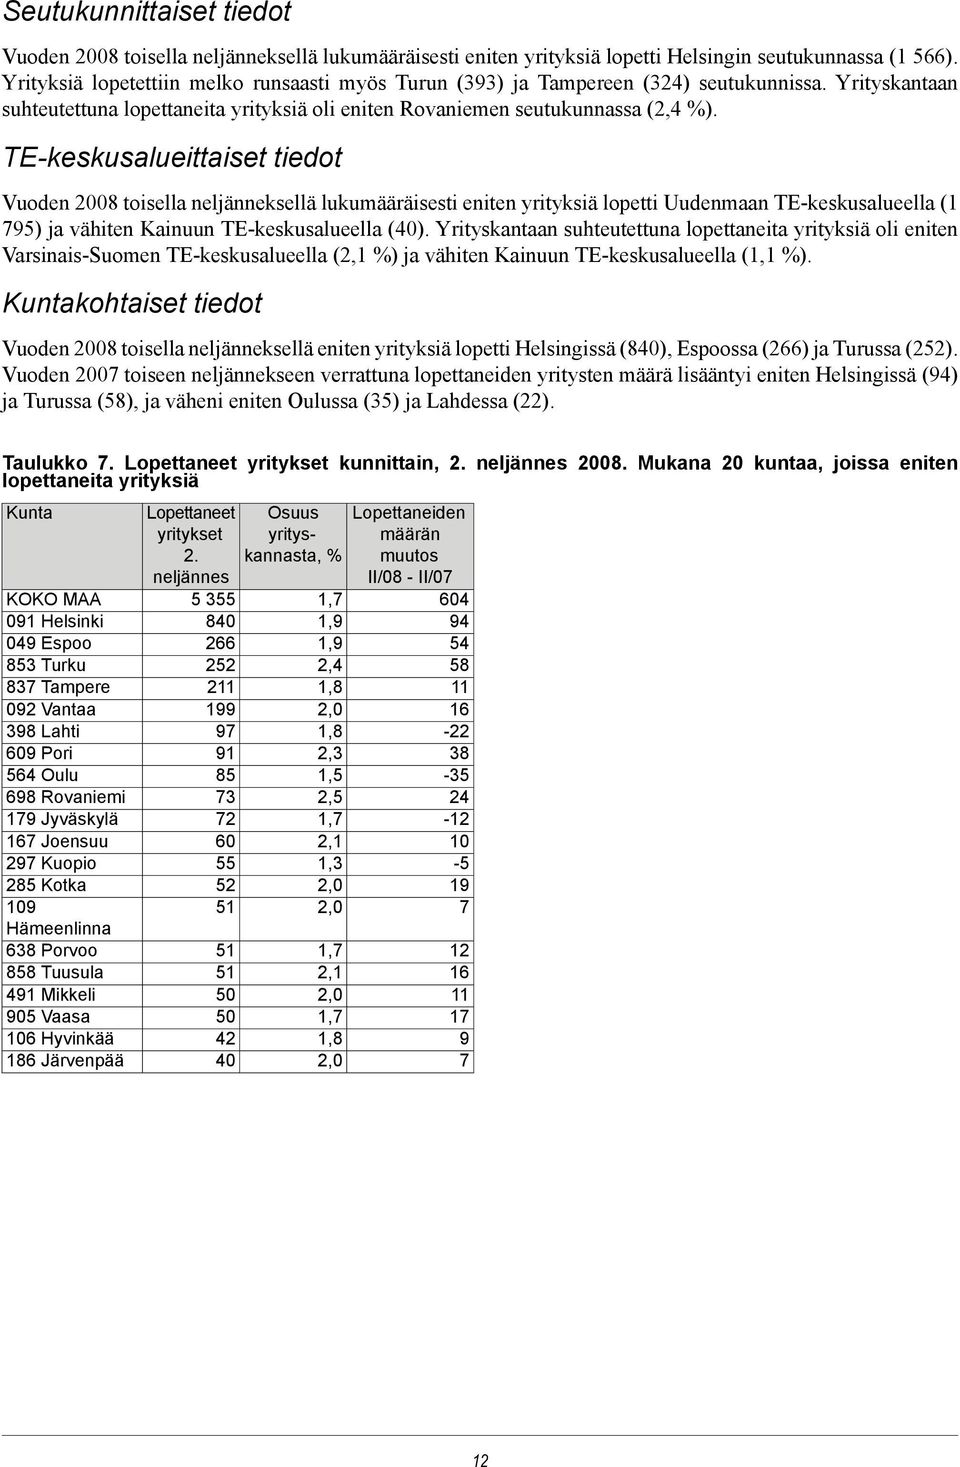 TE-keskusalueittaiset tiedot Vuoden 2008 toisella neljänneksellä lukumääräisesti eniten yrityksiä lopetti Uudenmaan TE-keskusalueella (1 795) ja vähiten Kainuun TE-keskusalueella (40).